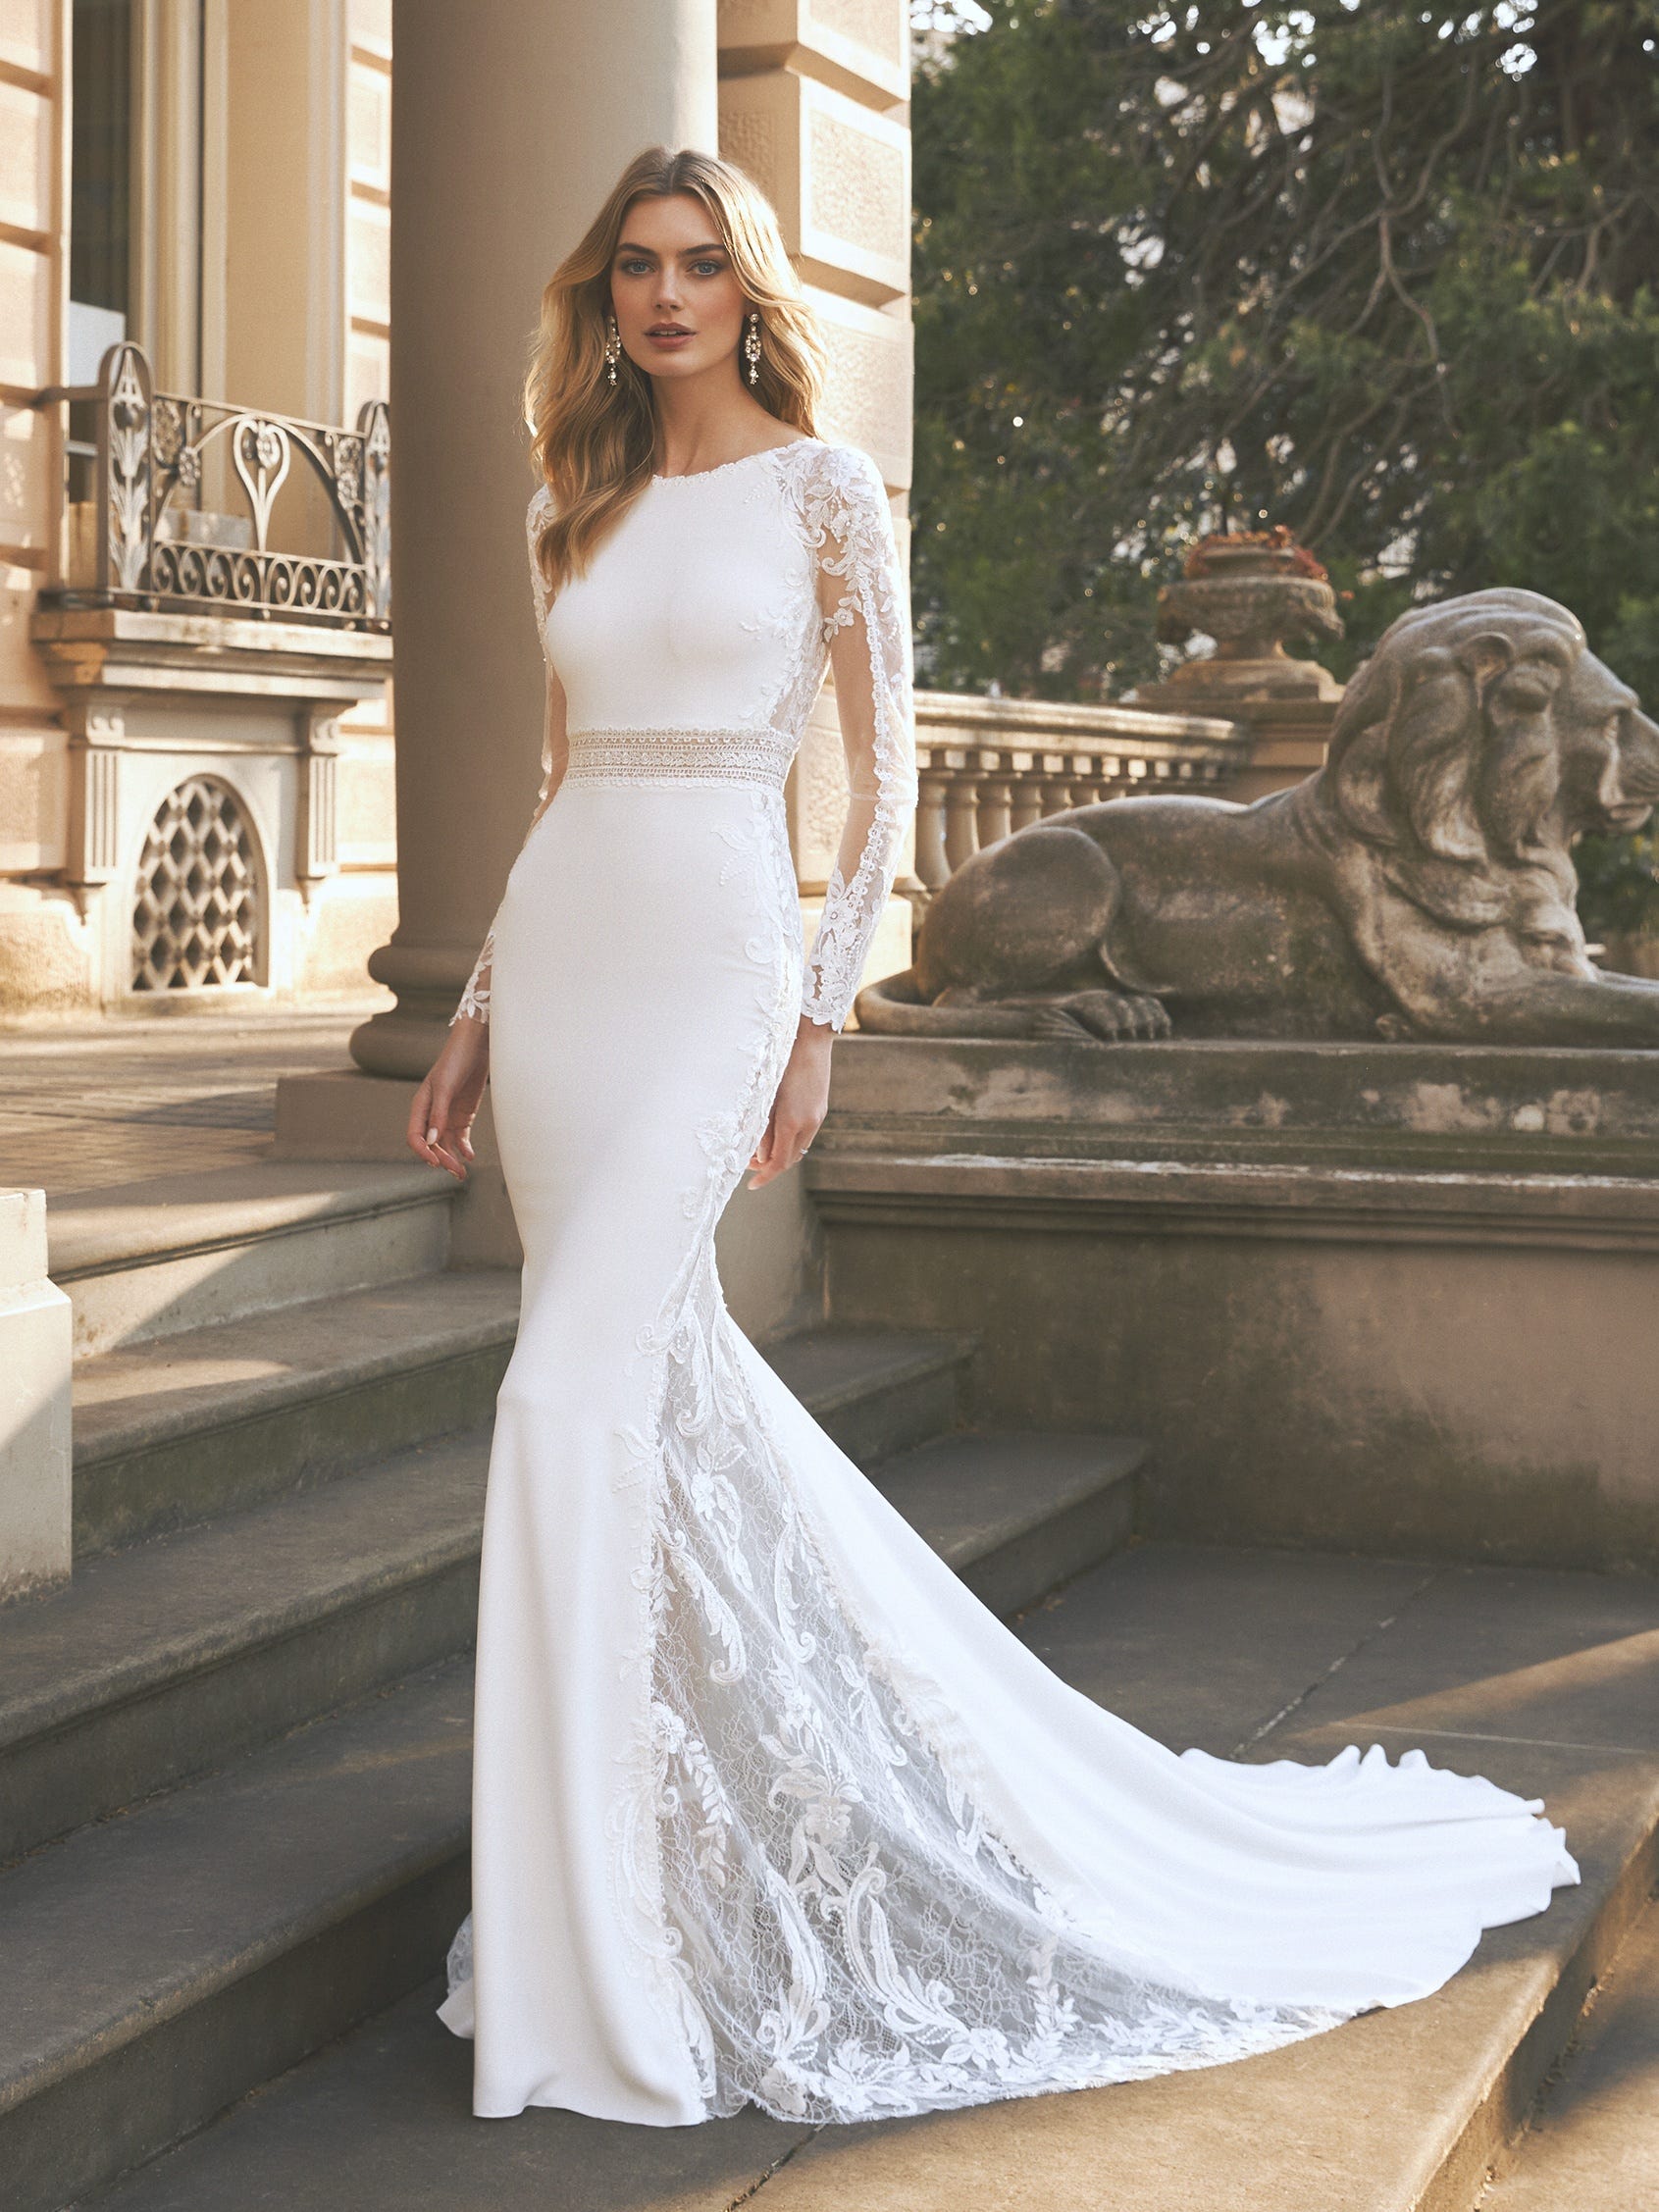 Wedding Dresses Online Australia | Wedding Dress for Women